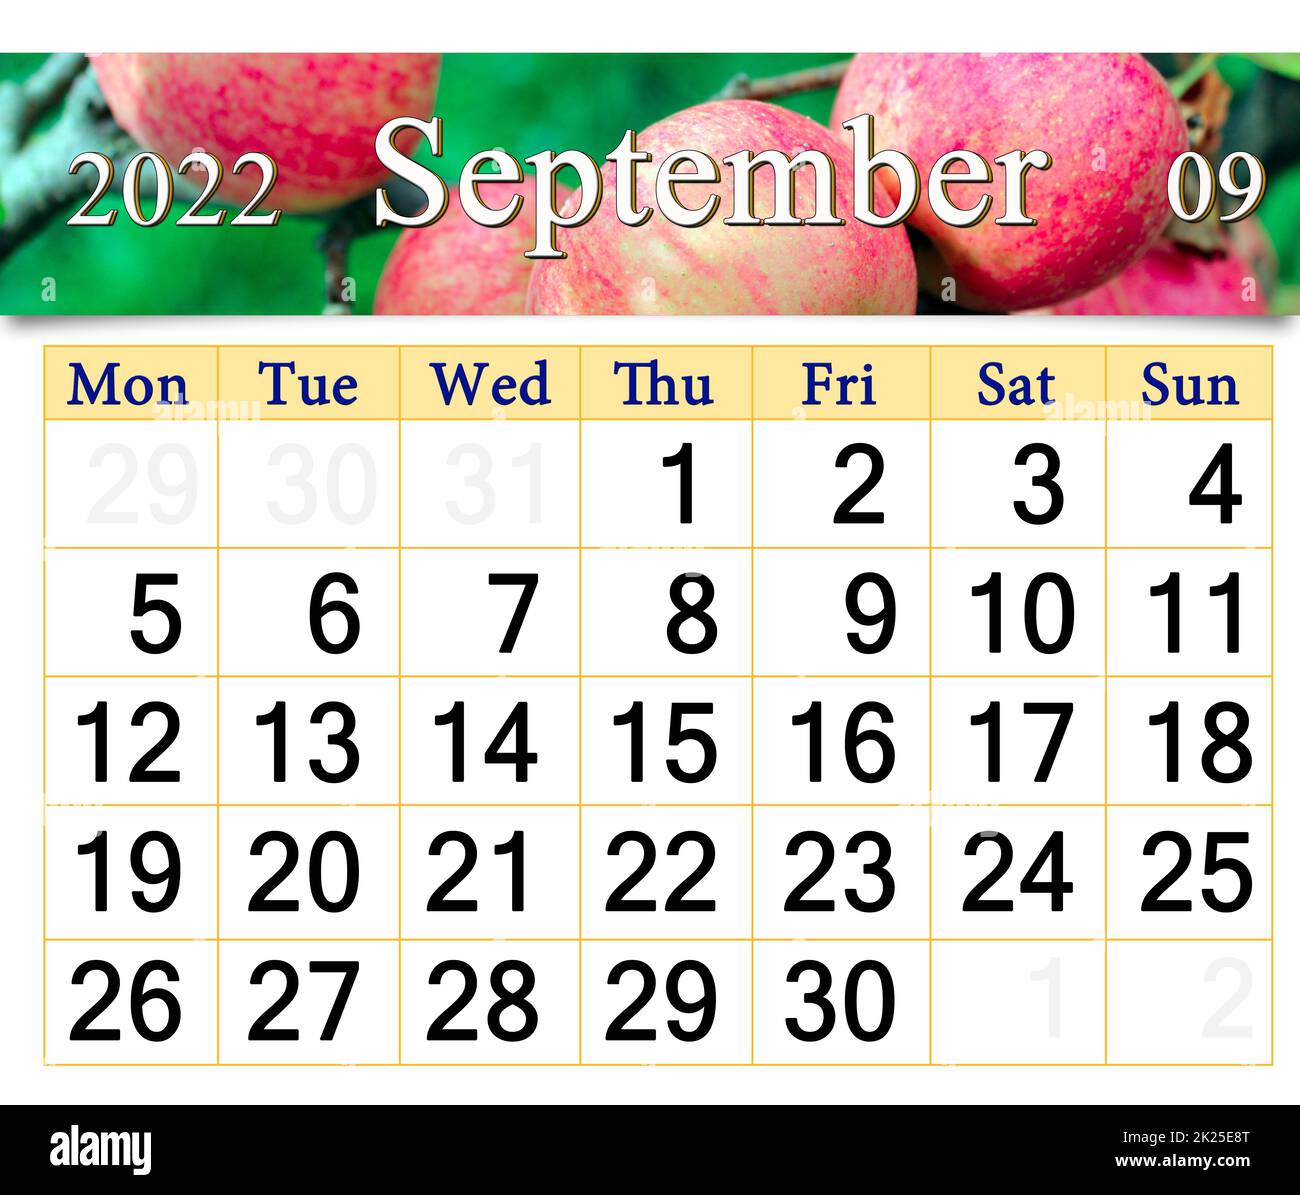 Kalender für september 2022 mit Bild von reifen roten Äpfeln auf einem Baumzweig Stockfoto